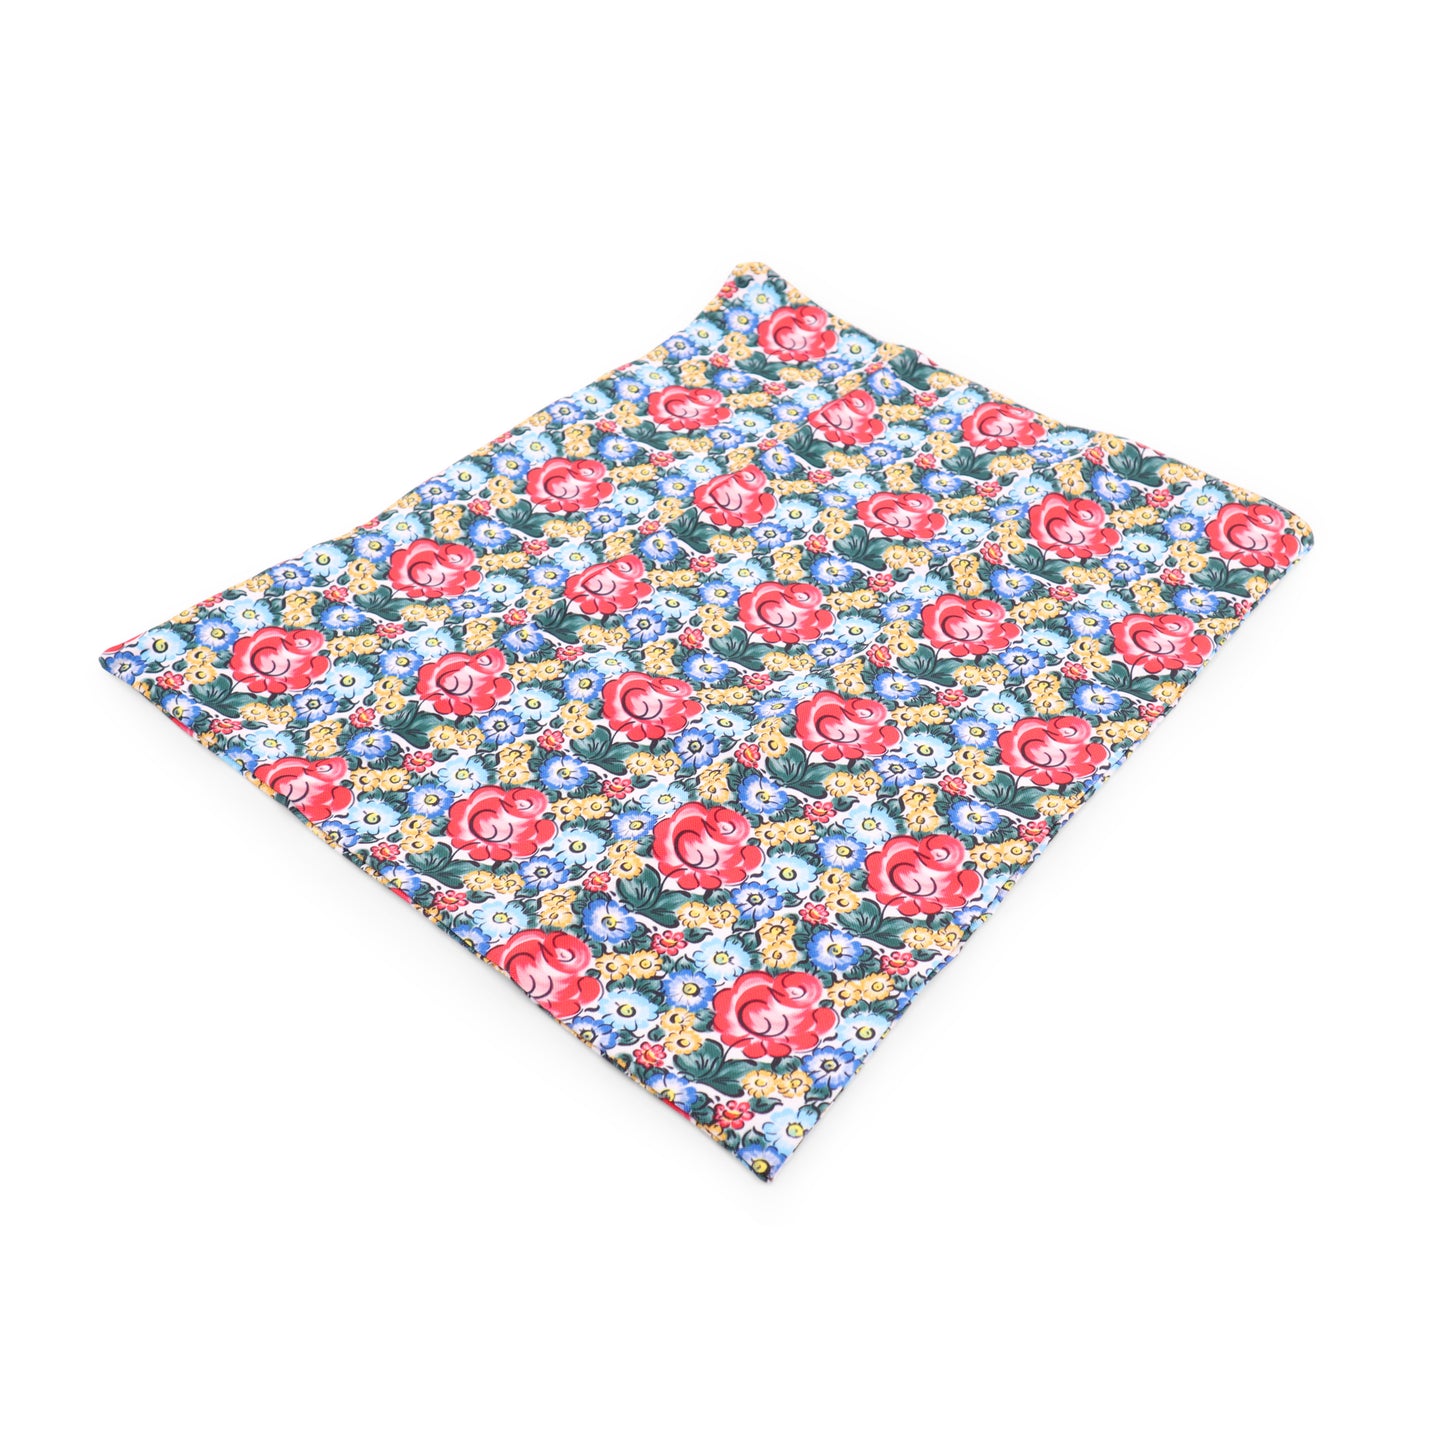 20"x20" Pillow Case. Pattern: Color